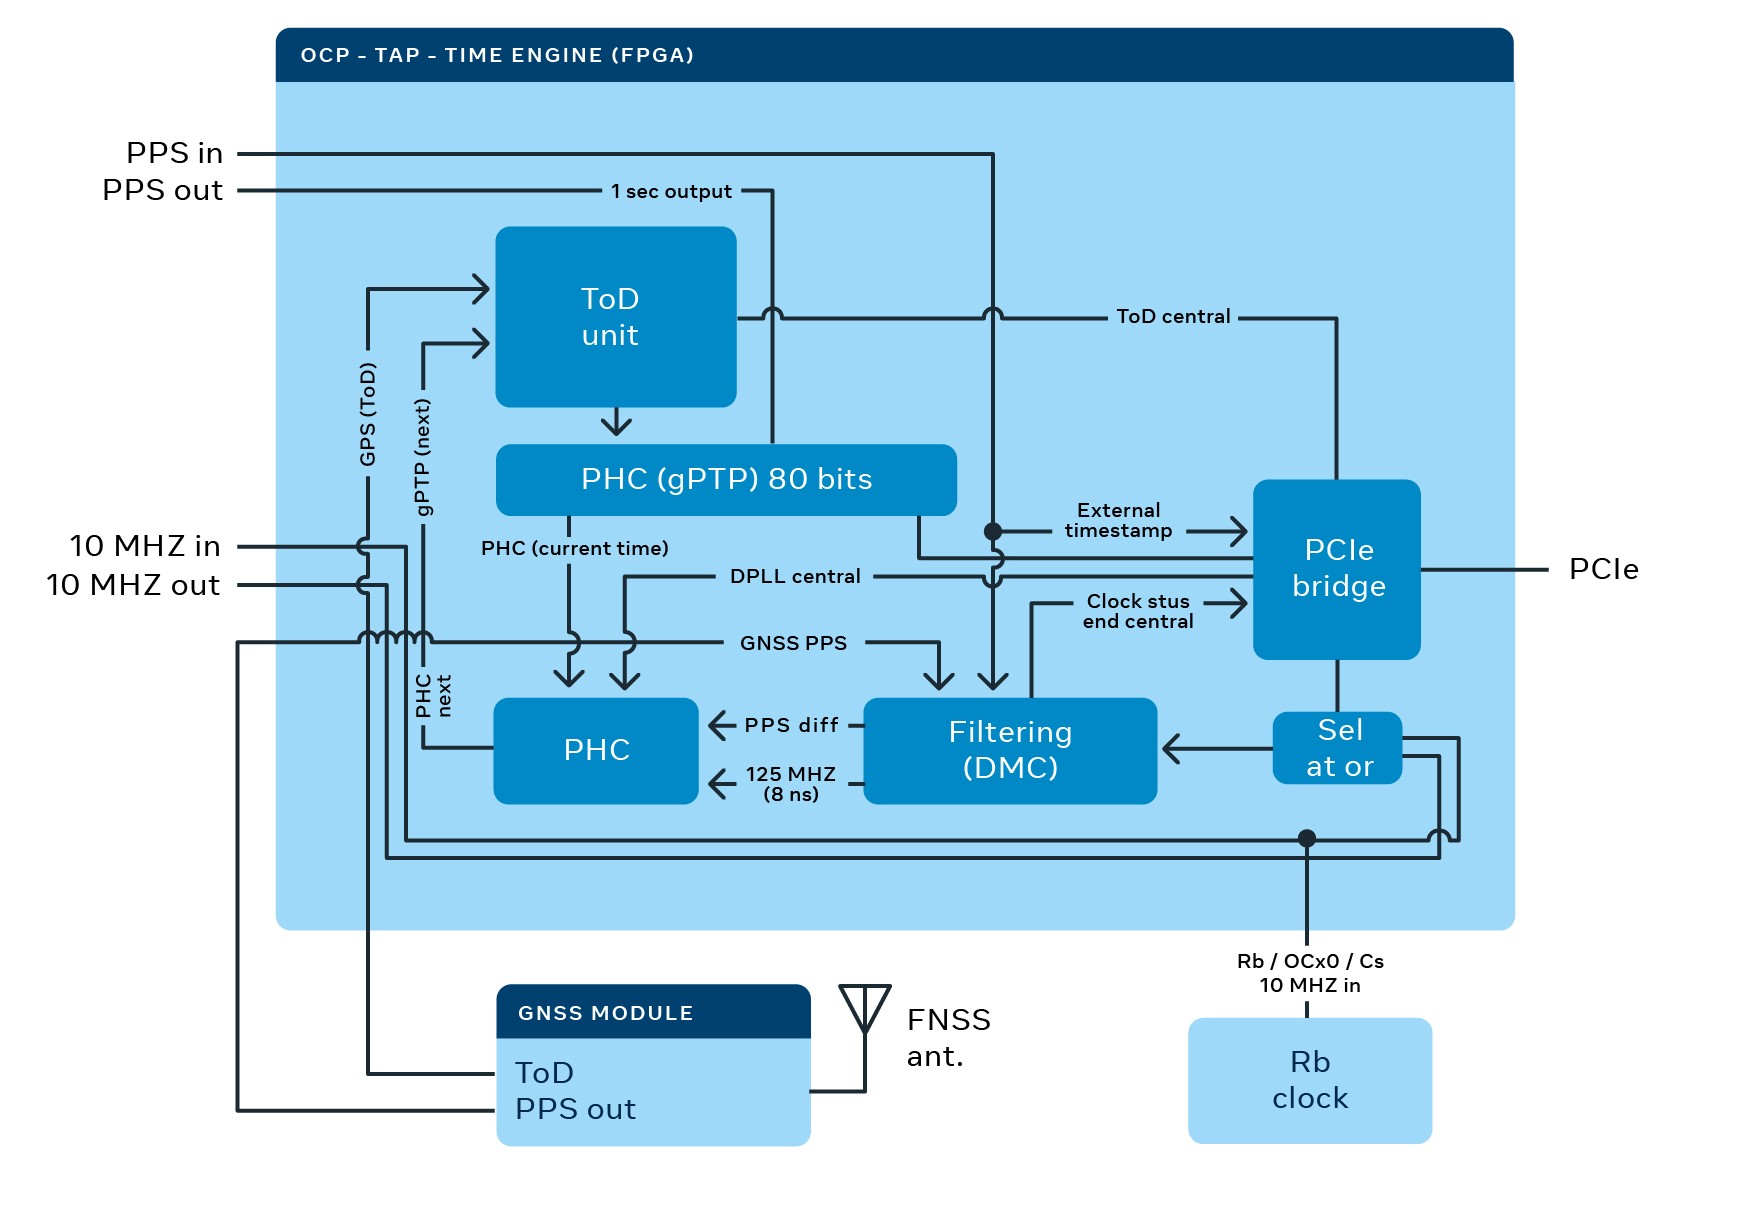 CD21_391-Eng-Blog-Facebook-Time-Appliances-diagram-8-v3